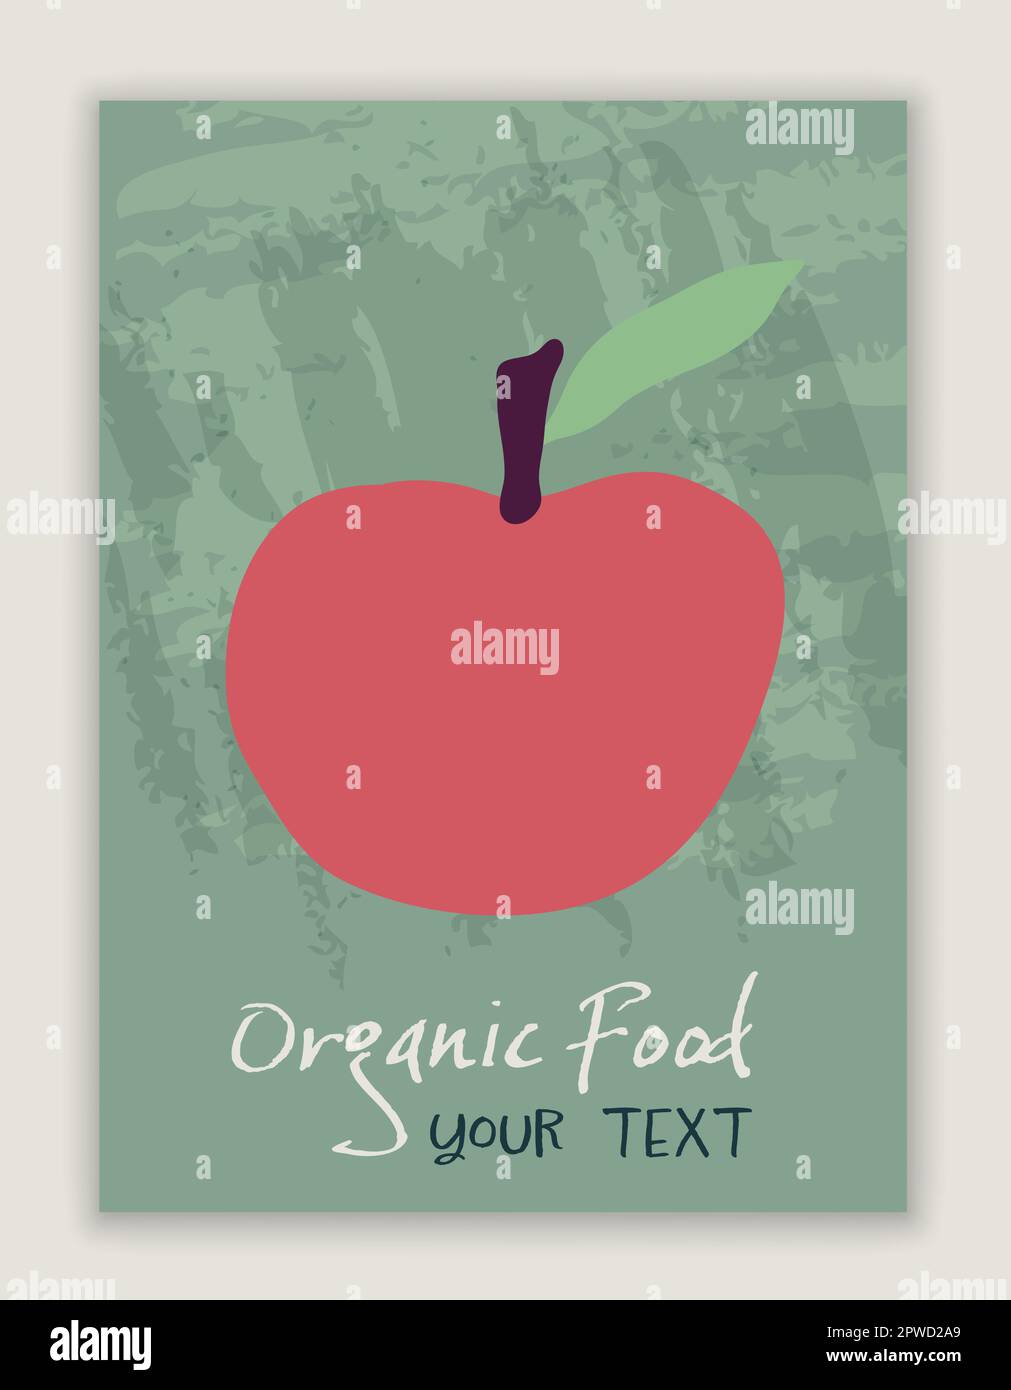 Poster mit rotem Apfel. Frische und gesunde natürliche Bio-Lebensmittel und Obst Konzept. Vitaminreicher Nährstoff. Diät. Ökologischer/biologischer Obstbau und -Ernte Stock Vektor